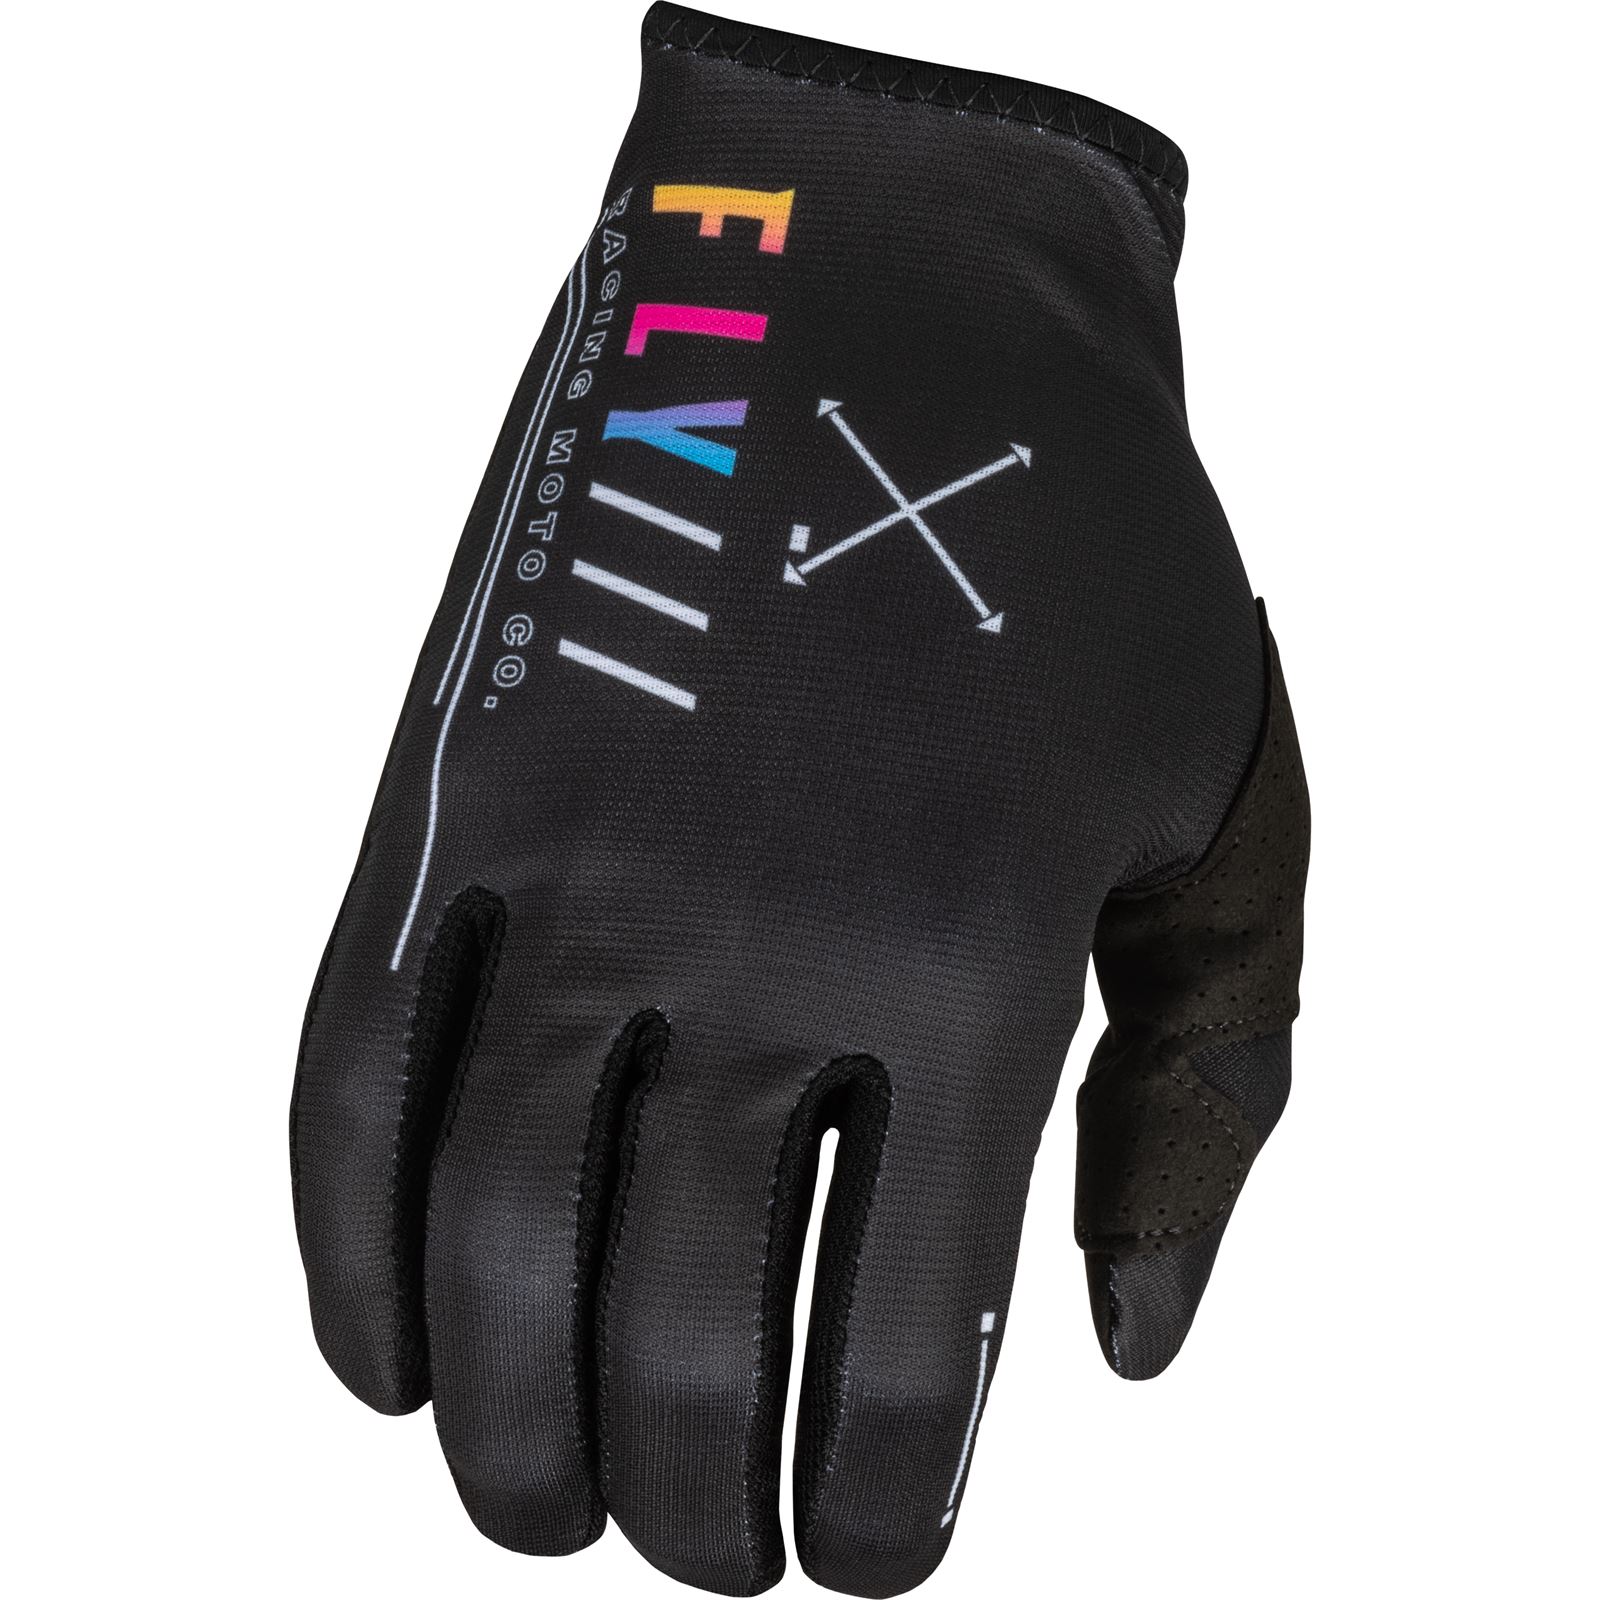 Fly Racing Lite S.E. Avenge Gloves - Black/Sunset - 2XL